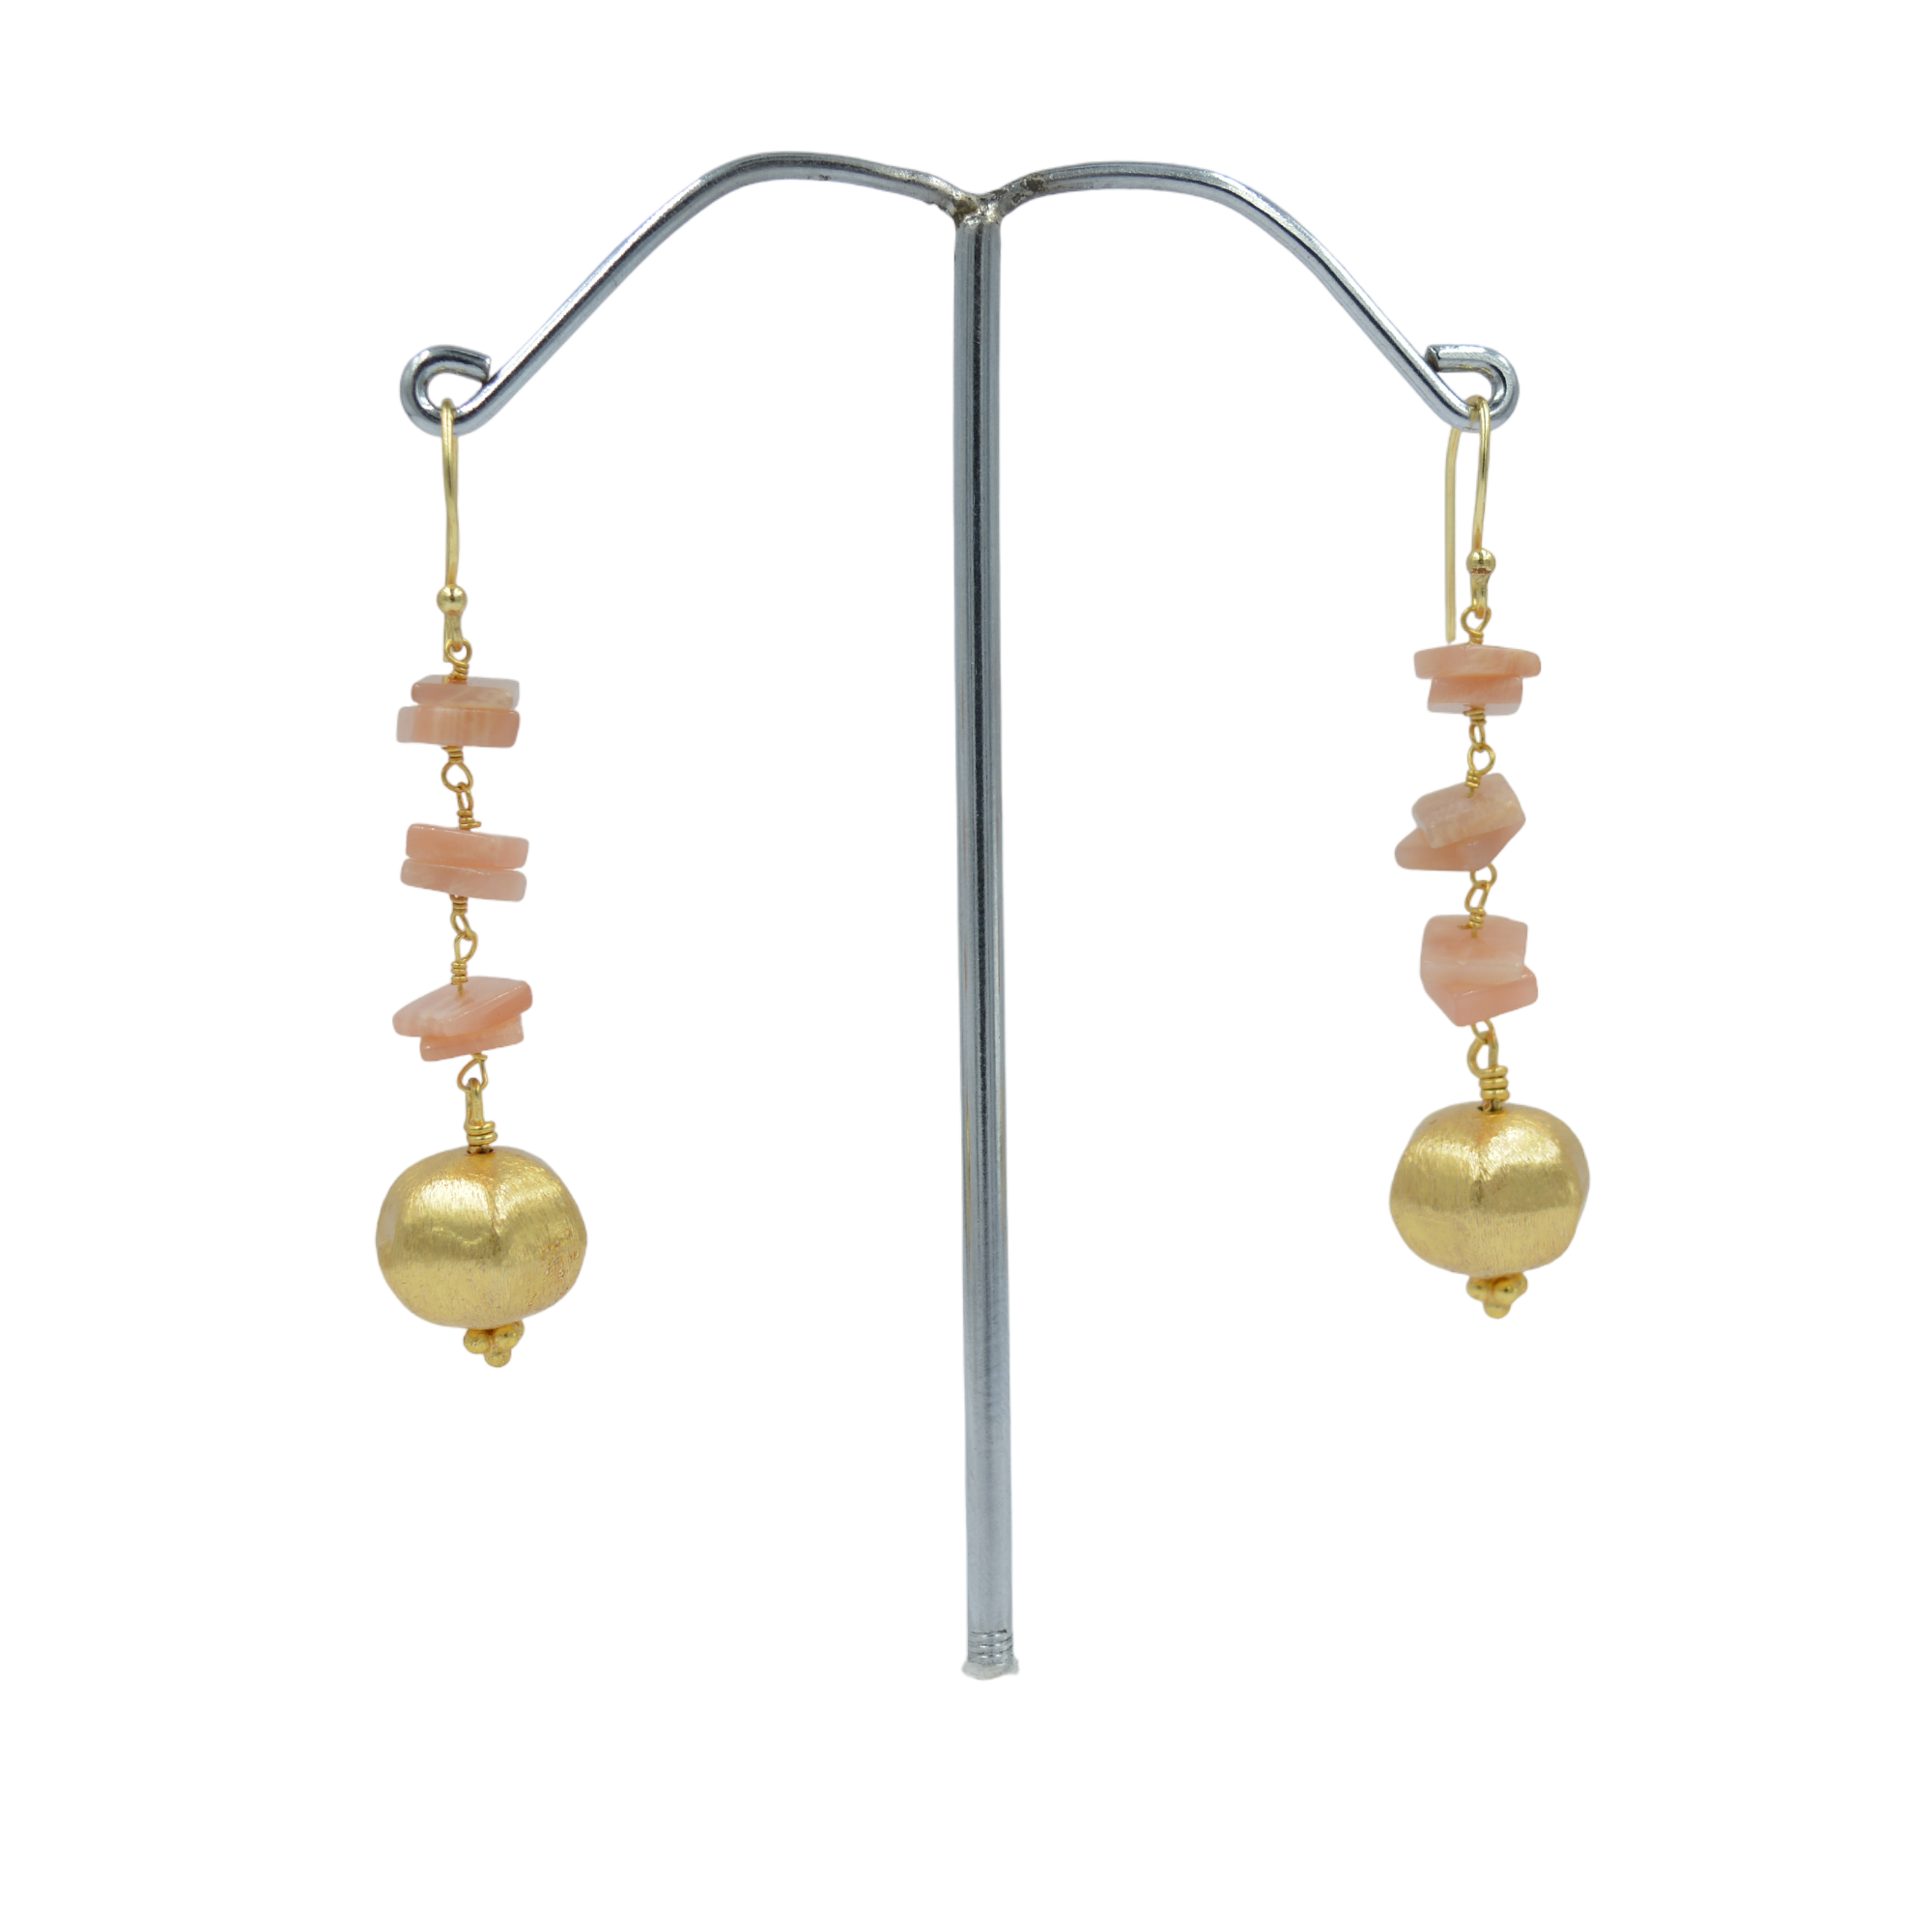 sunstone gemstone earrings hook earring for women fashion boho stone drop earrings drop shipping by Indian supplier